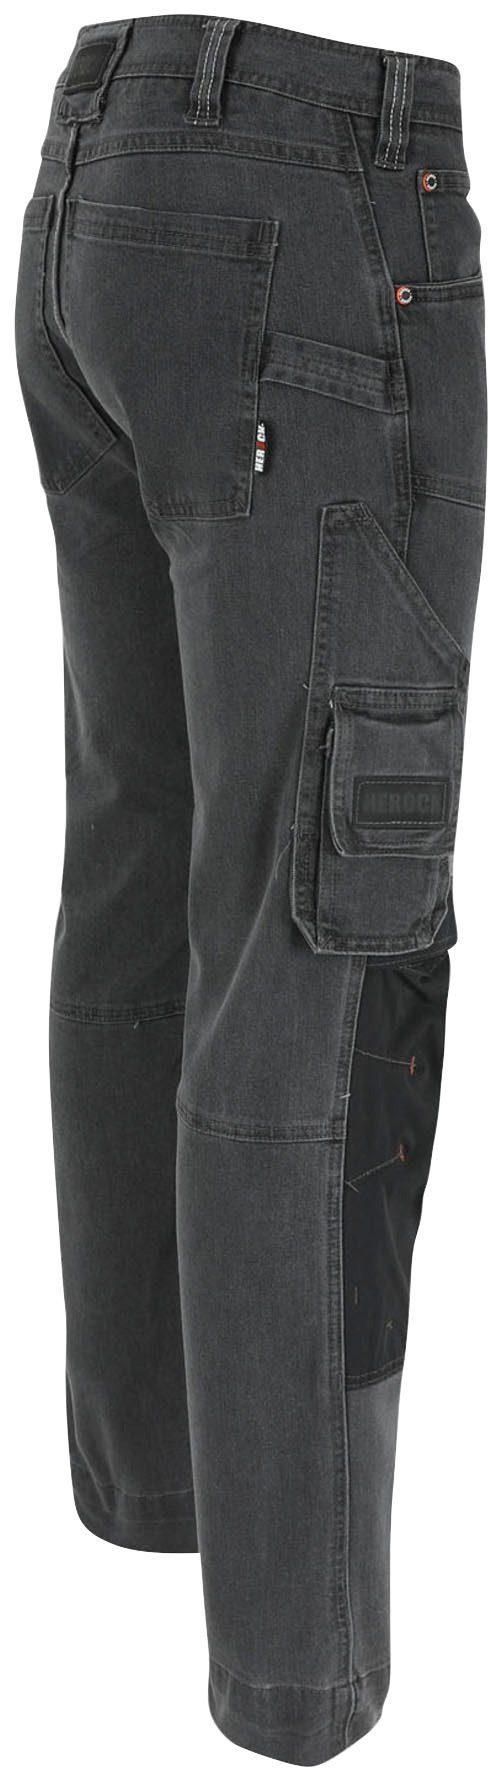 Arbeitshose Coolmax® Sphinx Taschen, mit Thermolite® und Hoses Stretch-Jeanshose, mehreren Herock